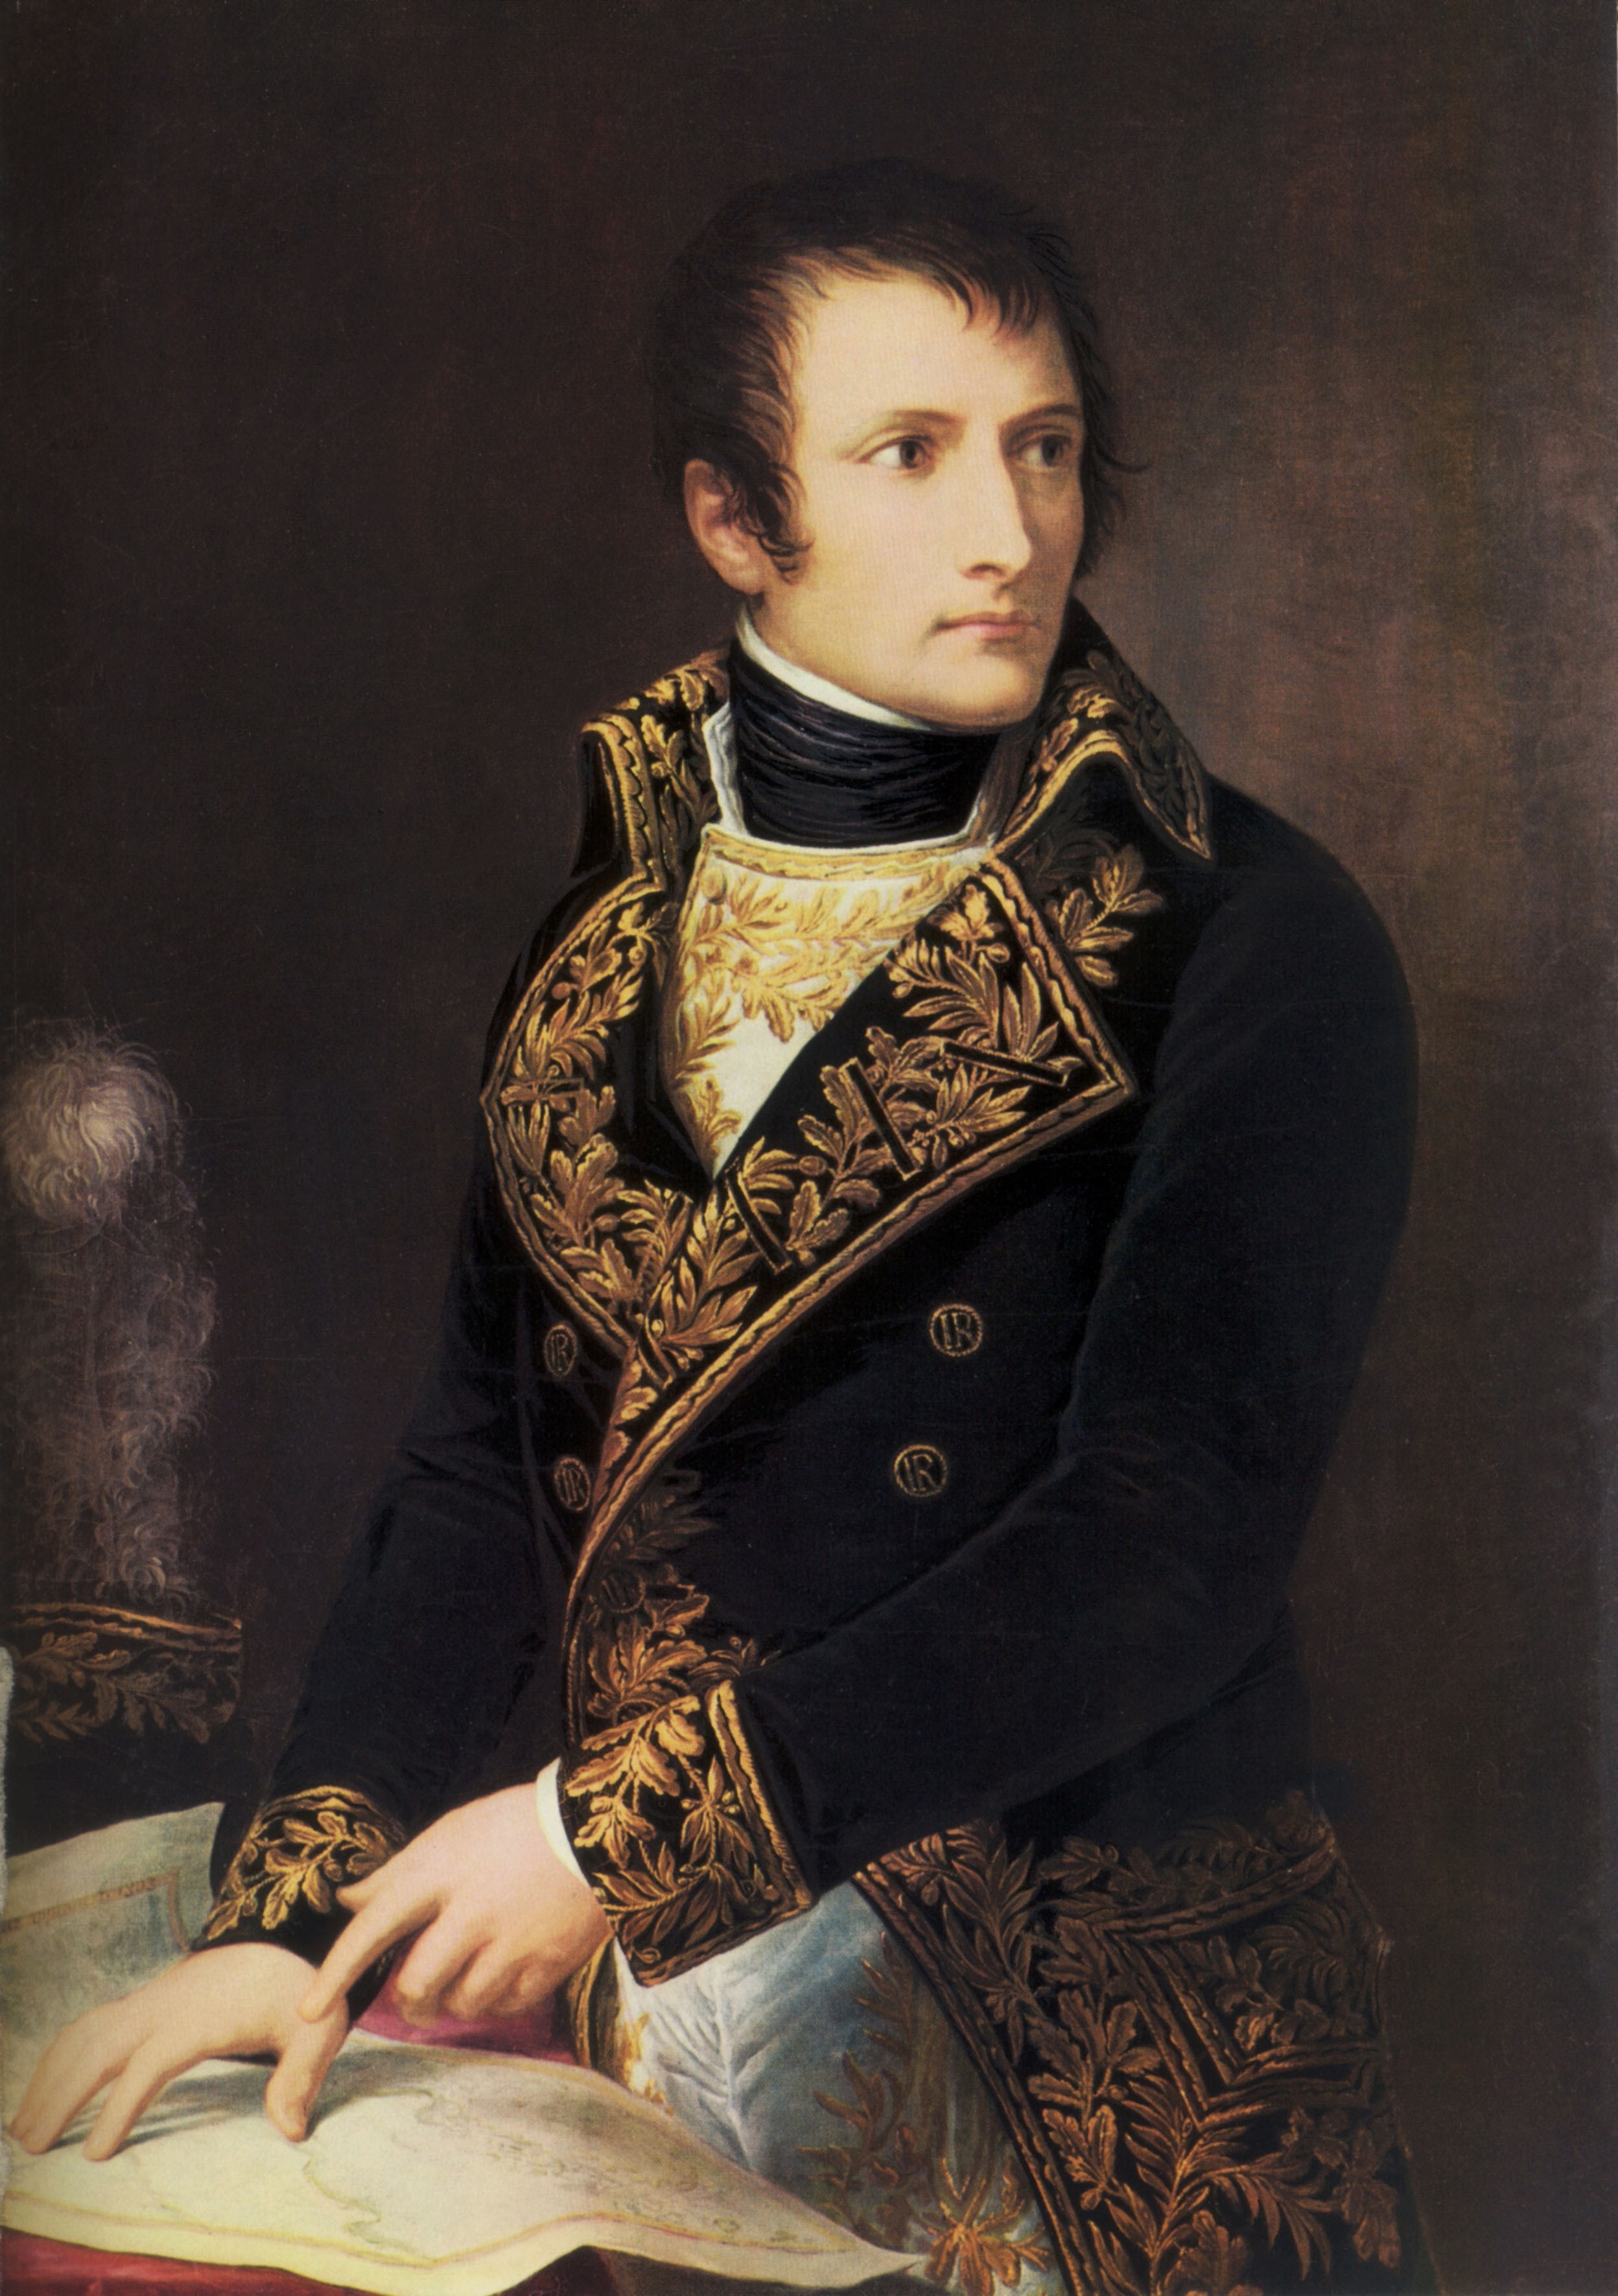 Il giovane generale francese Napoleone Bonaparte, a ventisette anni, dopo alcune vittorie della Francia rivoluzionaria contro le truppe inglesi, viene inviato in Italia nel 1796 dal governo repubblicano francese 